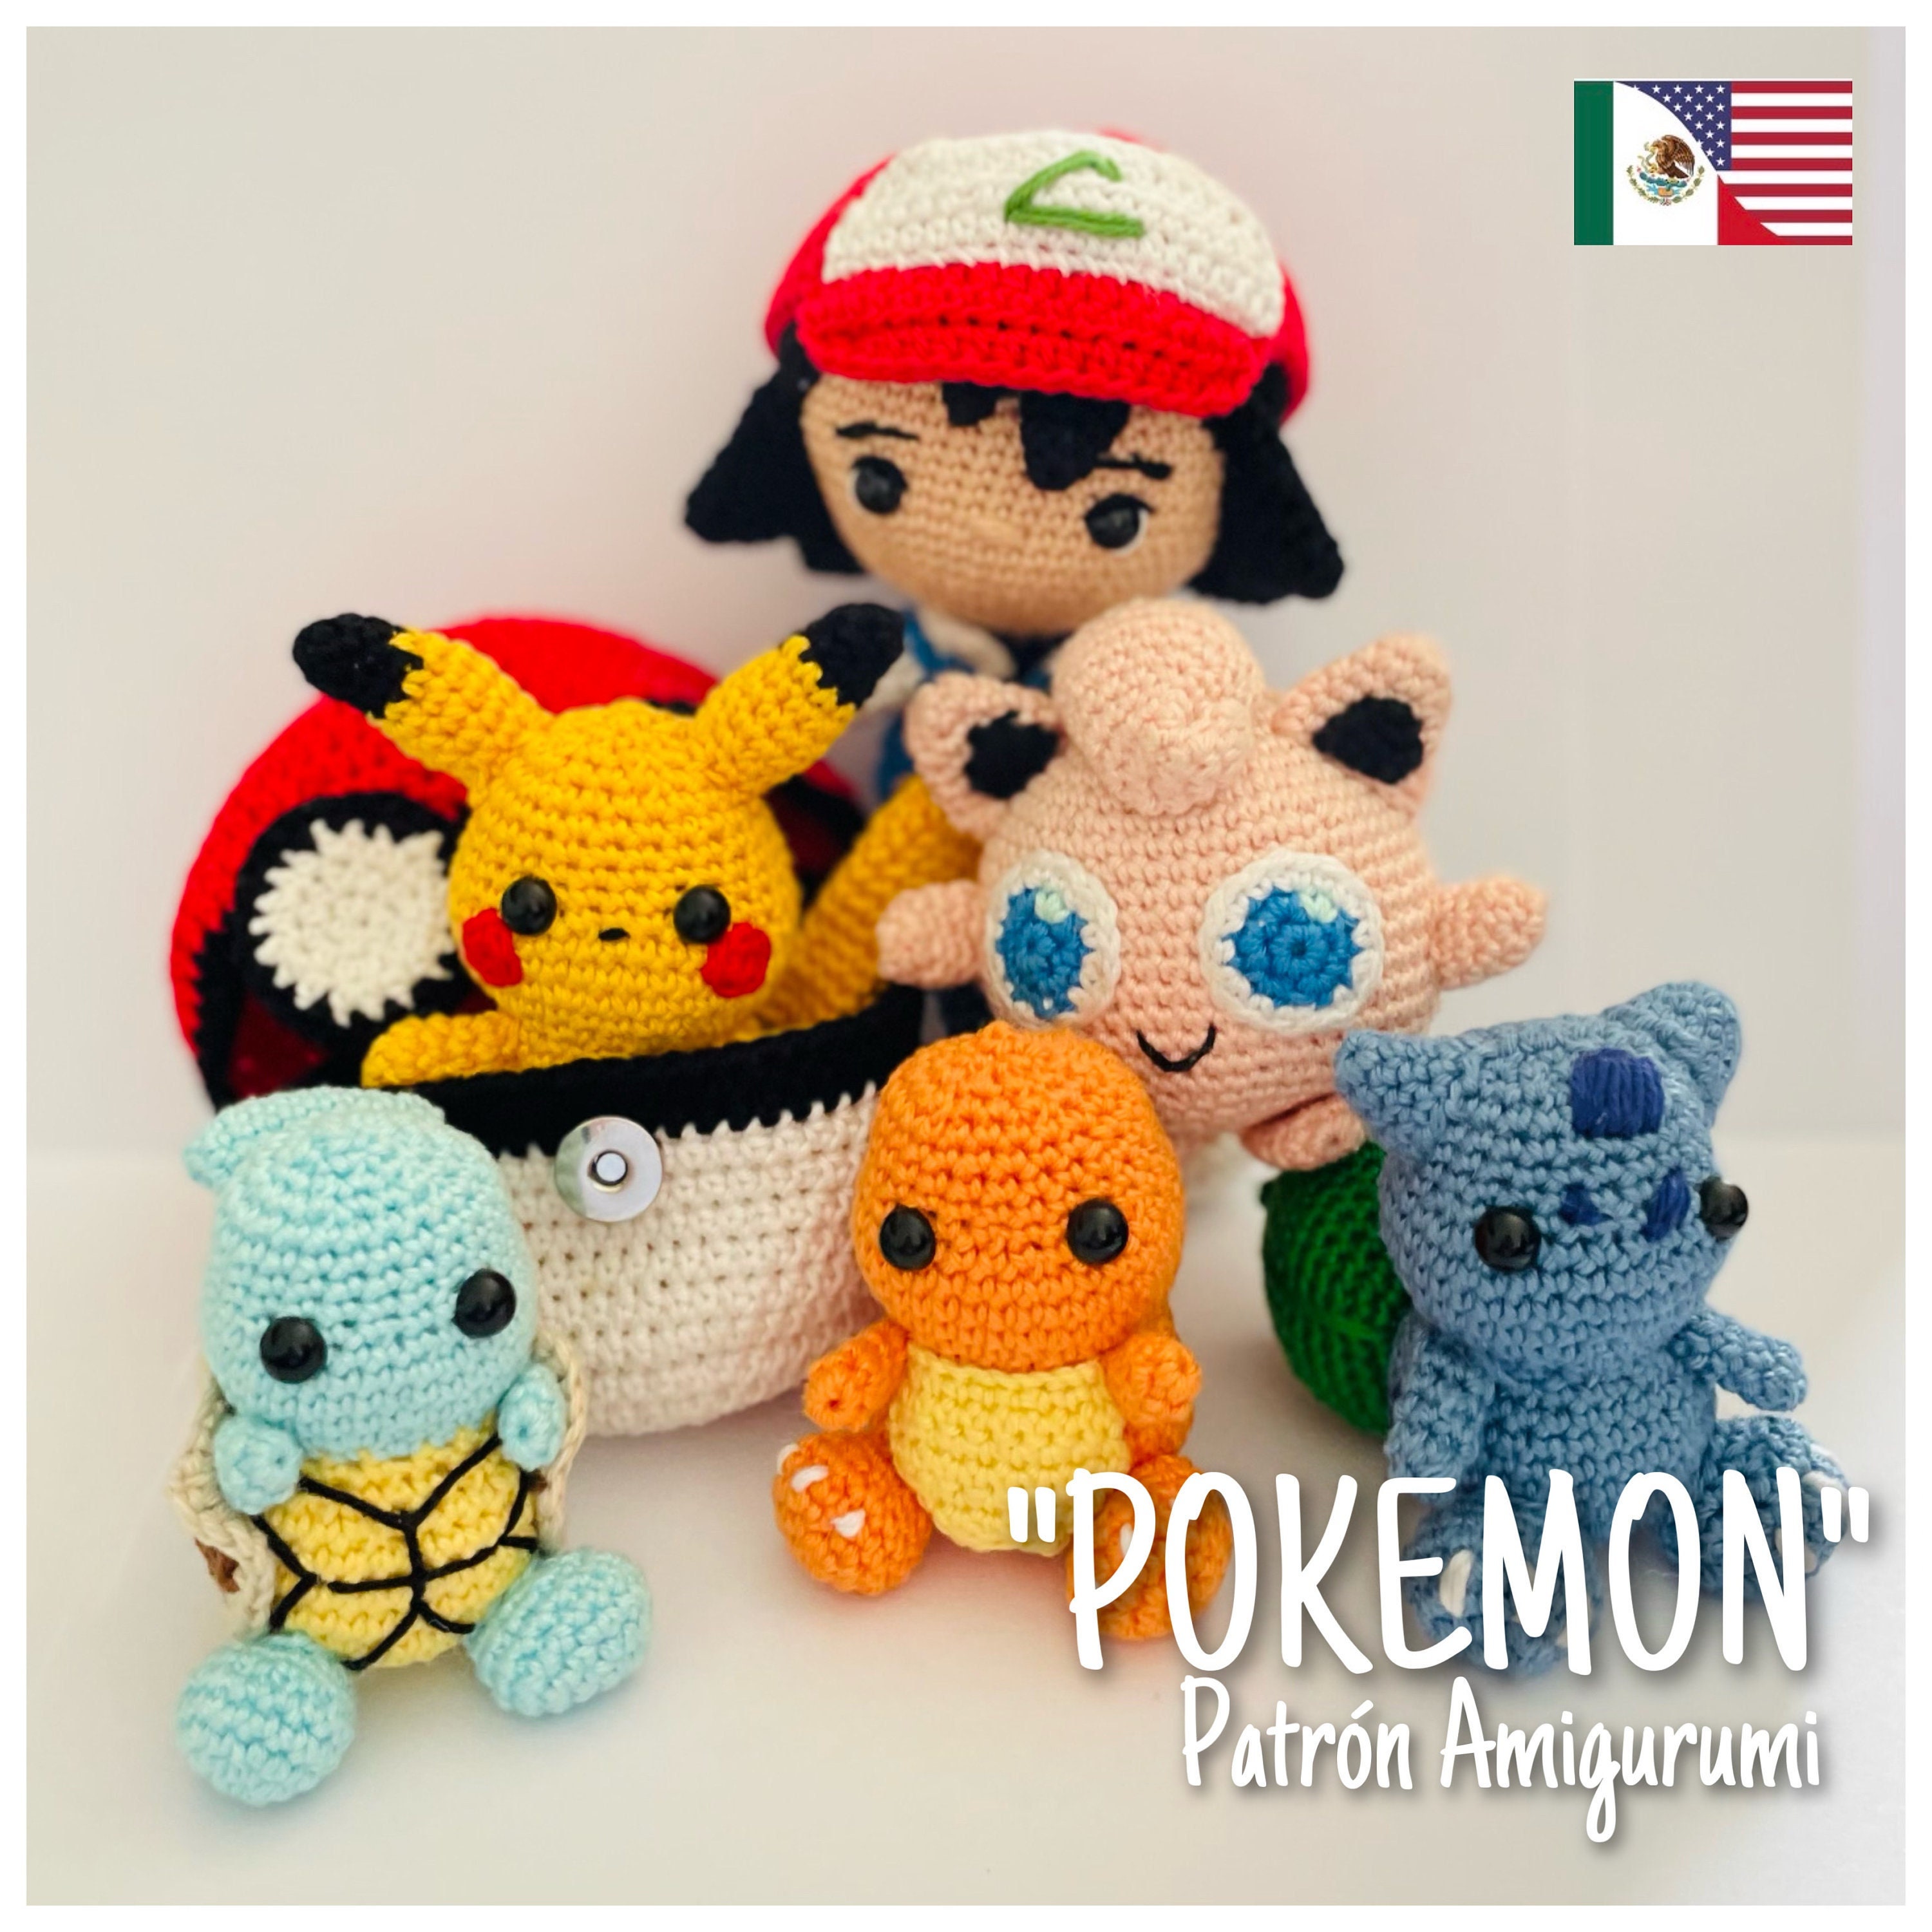 Pokémon Crochet Kit 